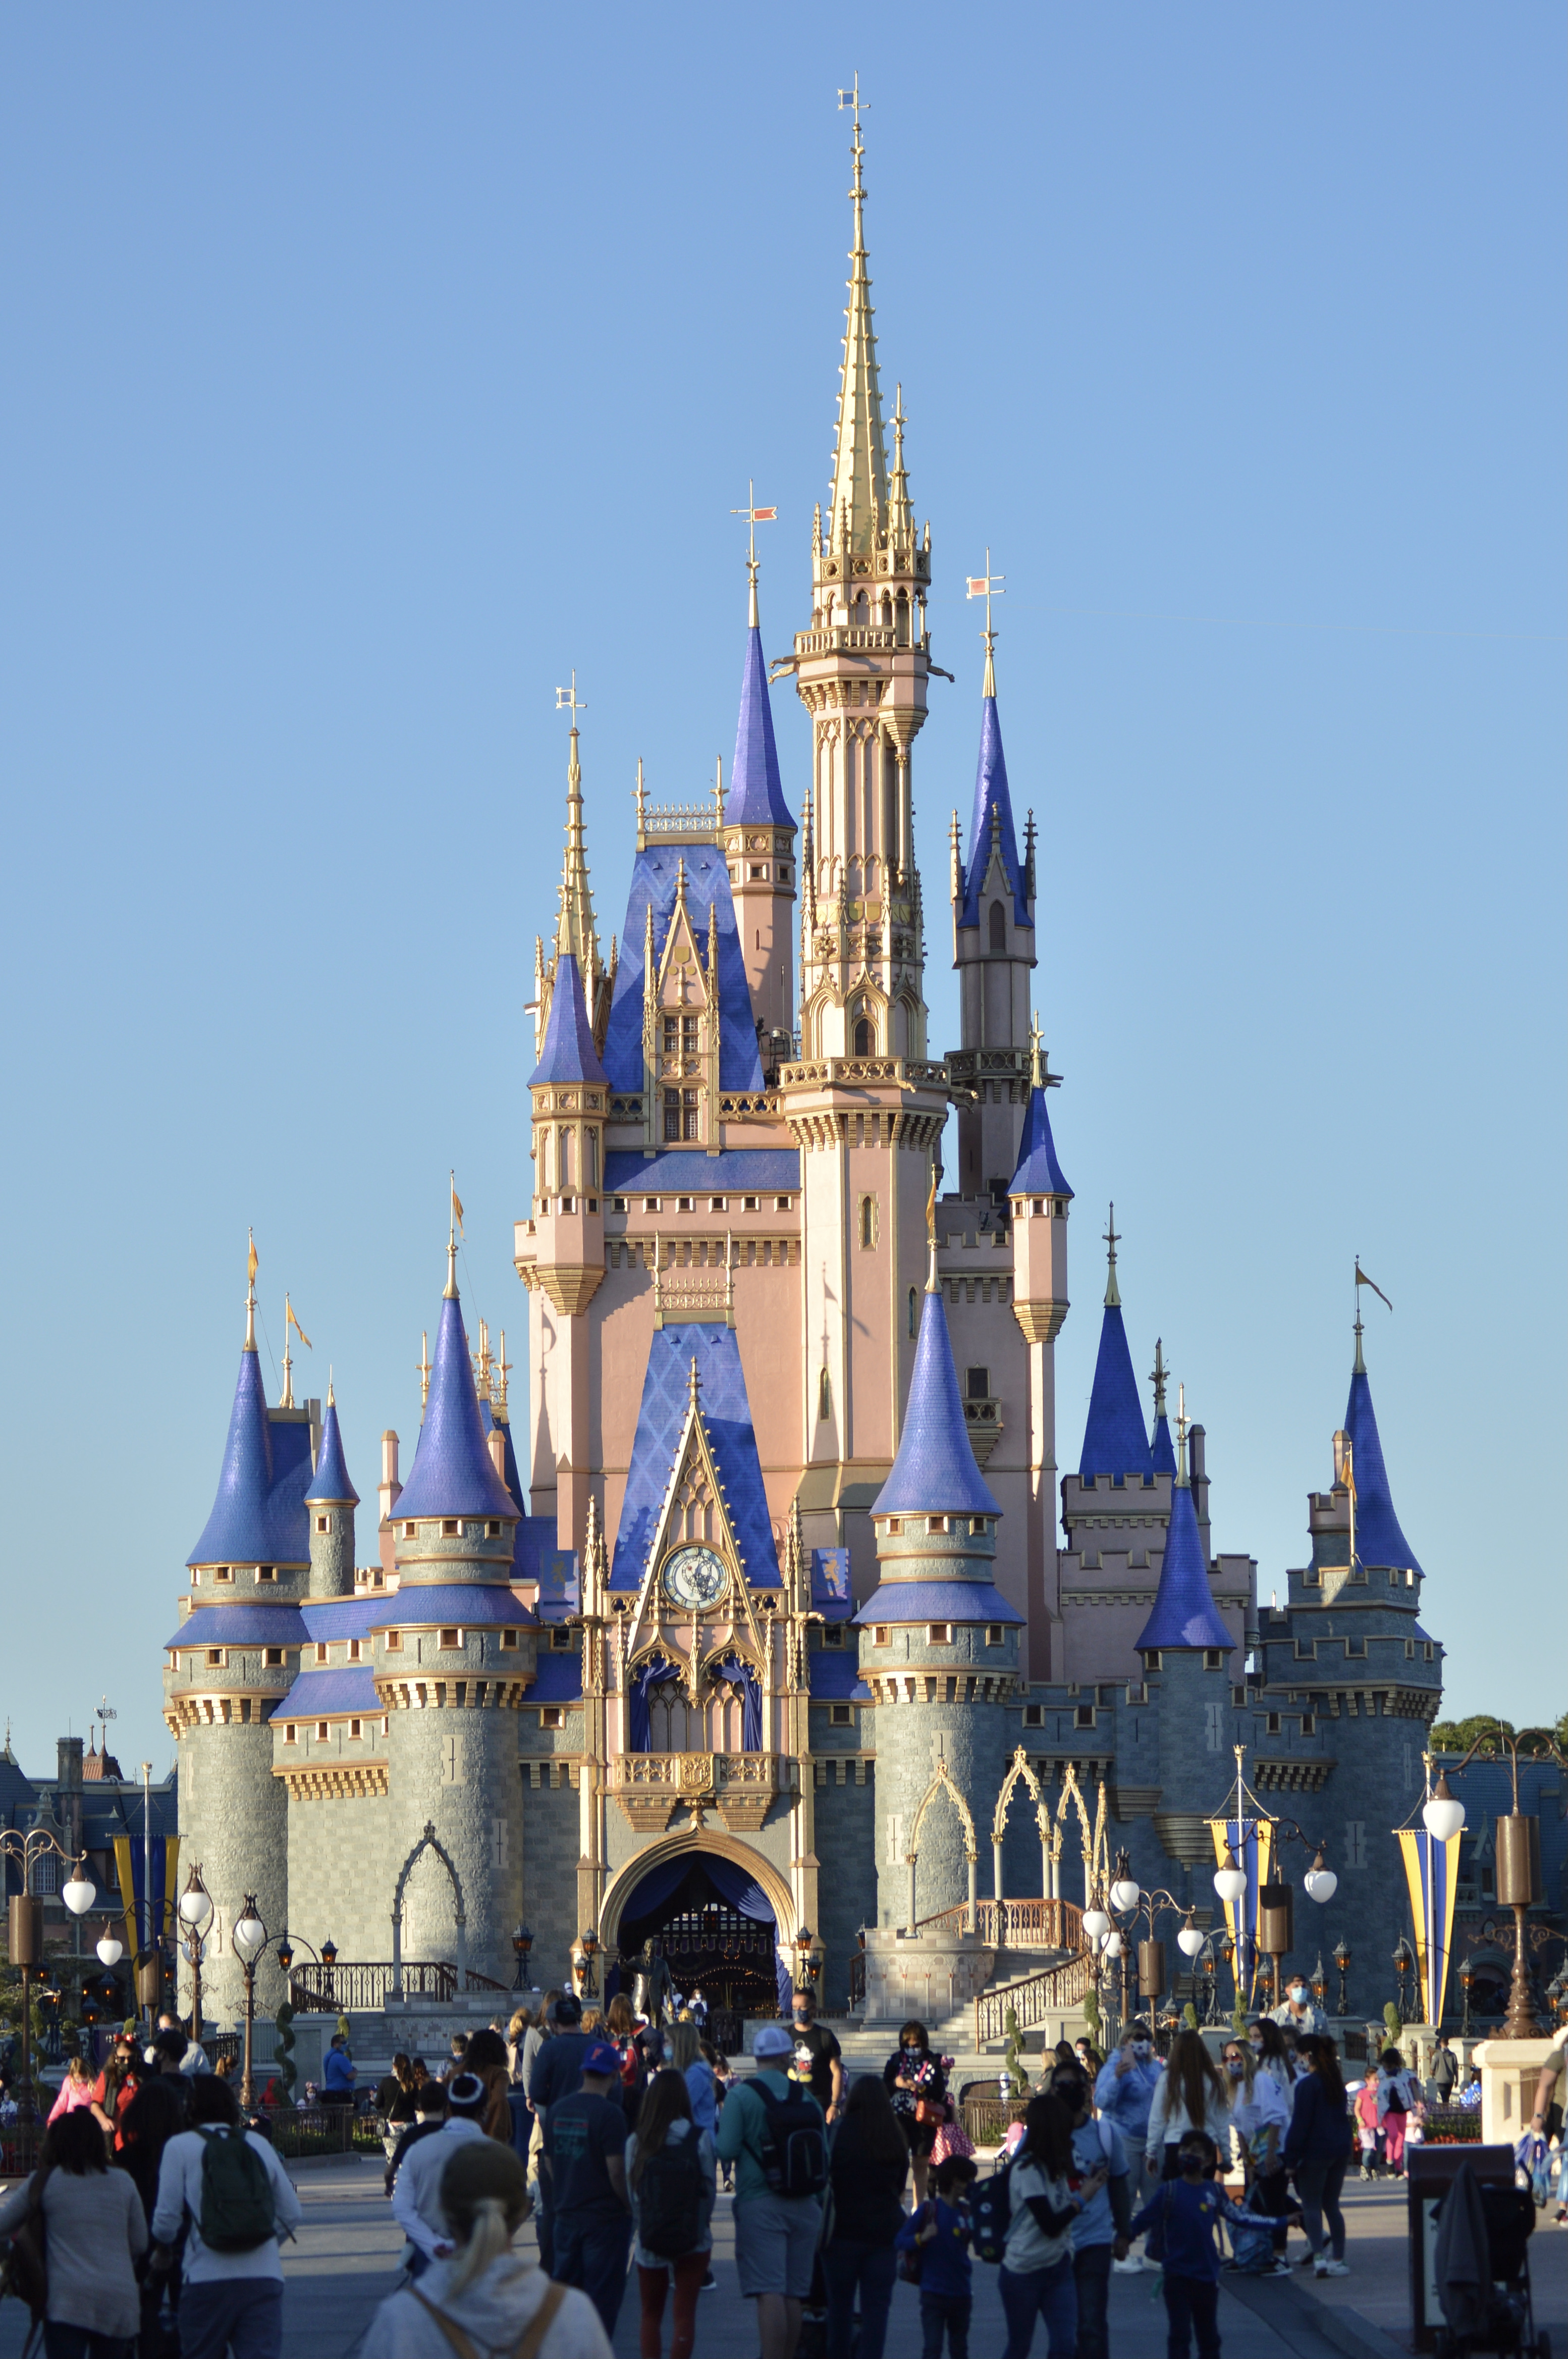  Disney Princess Pop-Up Magic Cinderella's Coach Game